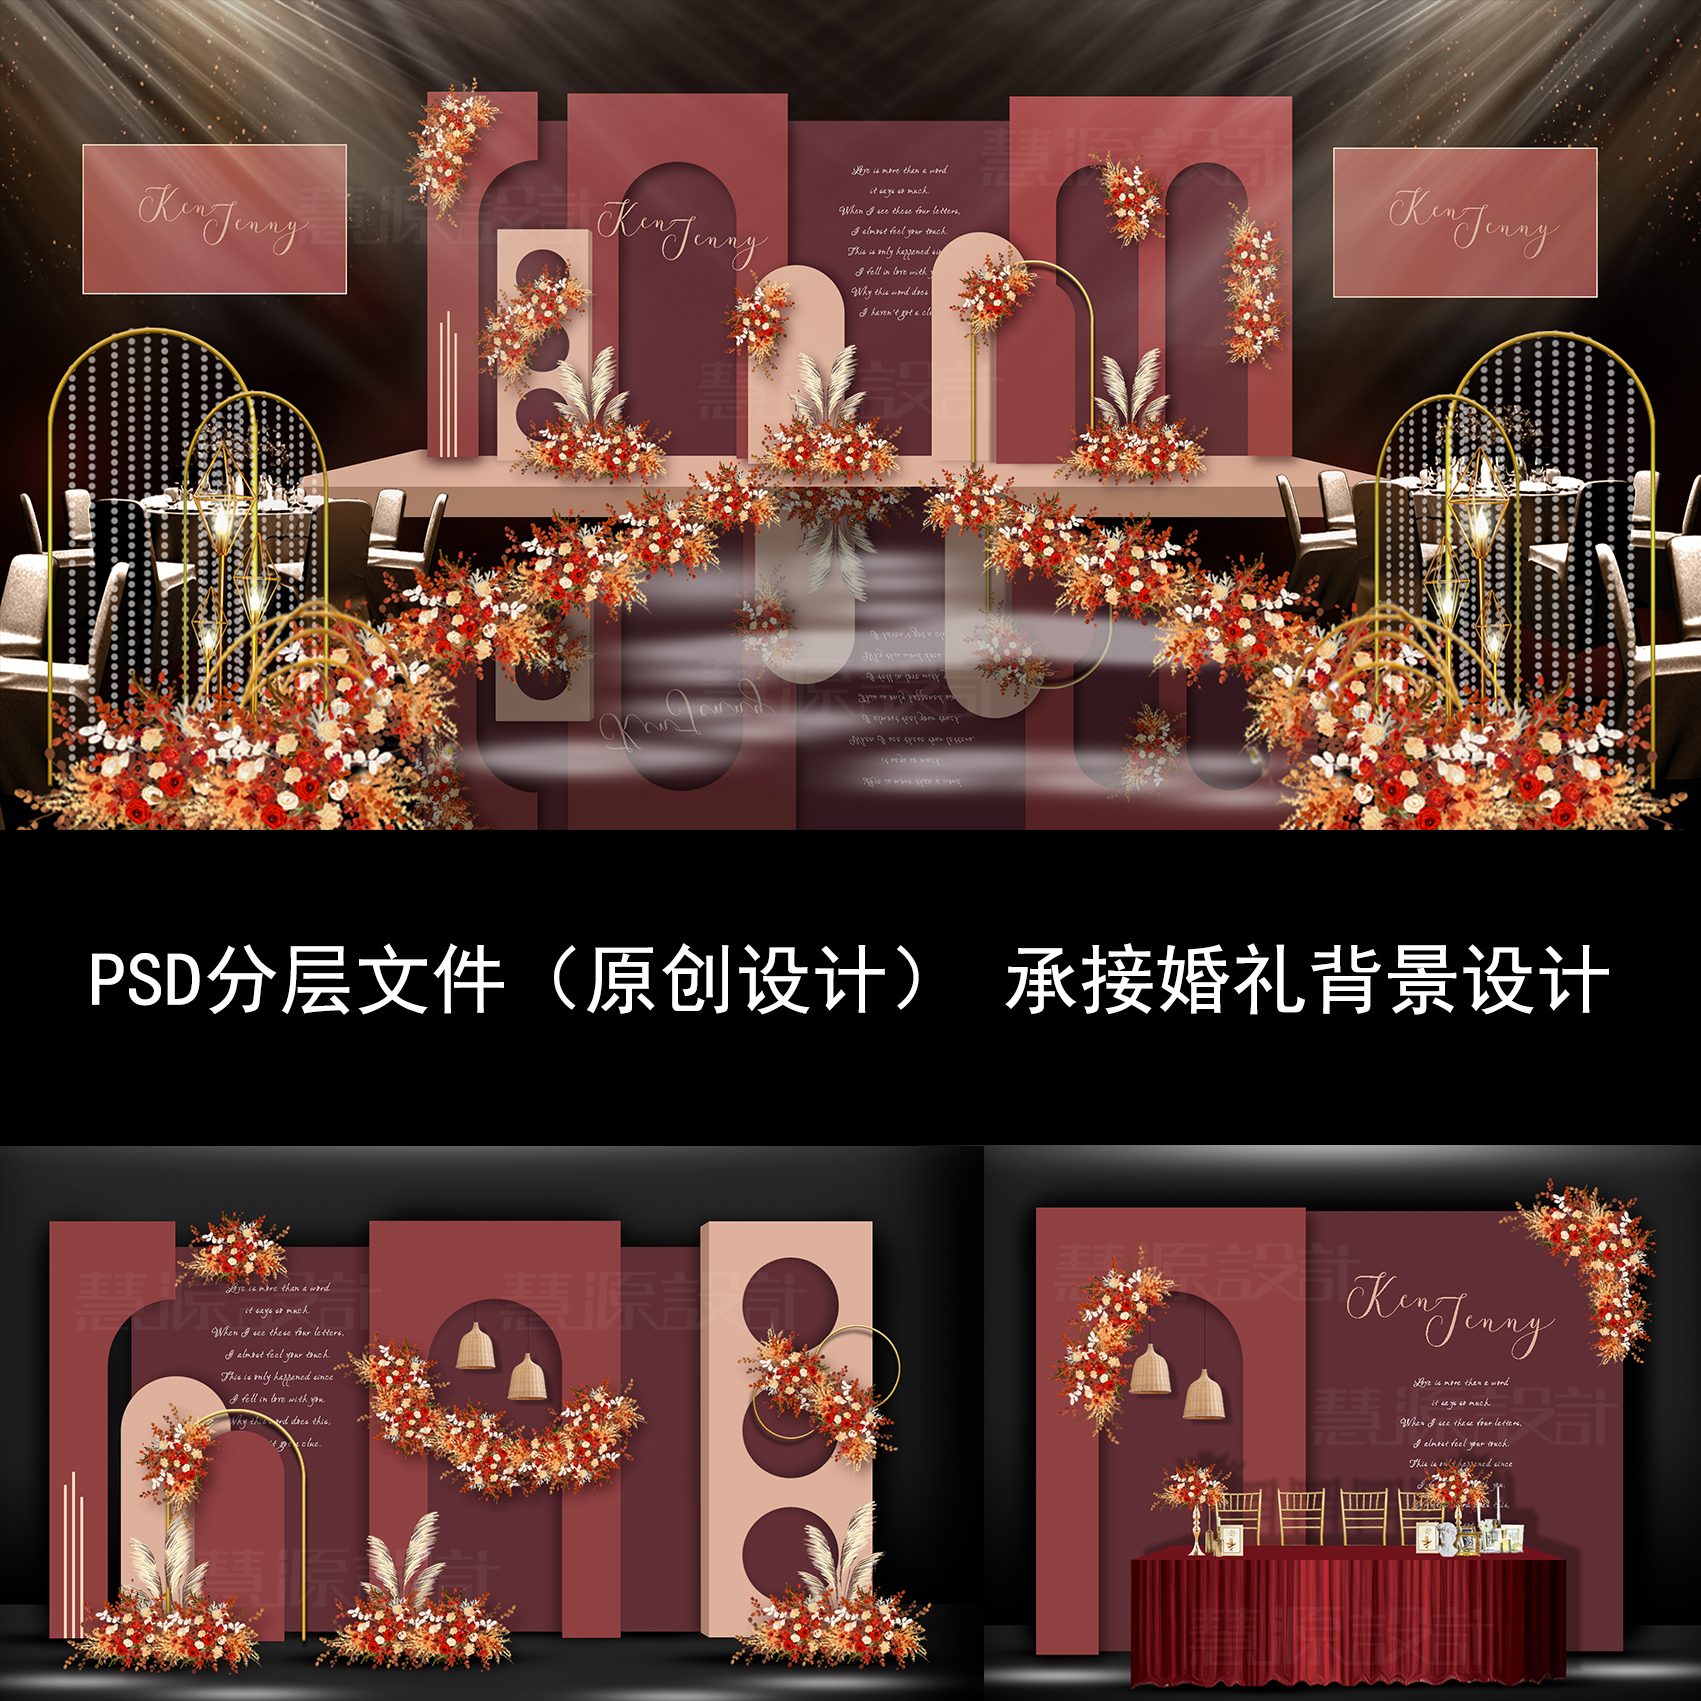 酒红色莫兰迪泰式风格小清新婚礼舞台策划方案PSD效果图源文件